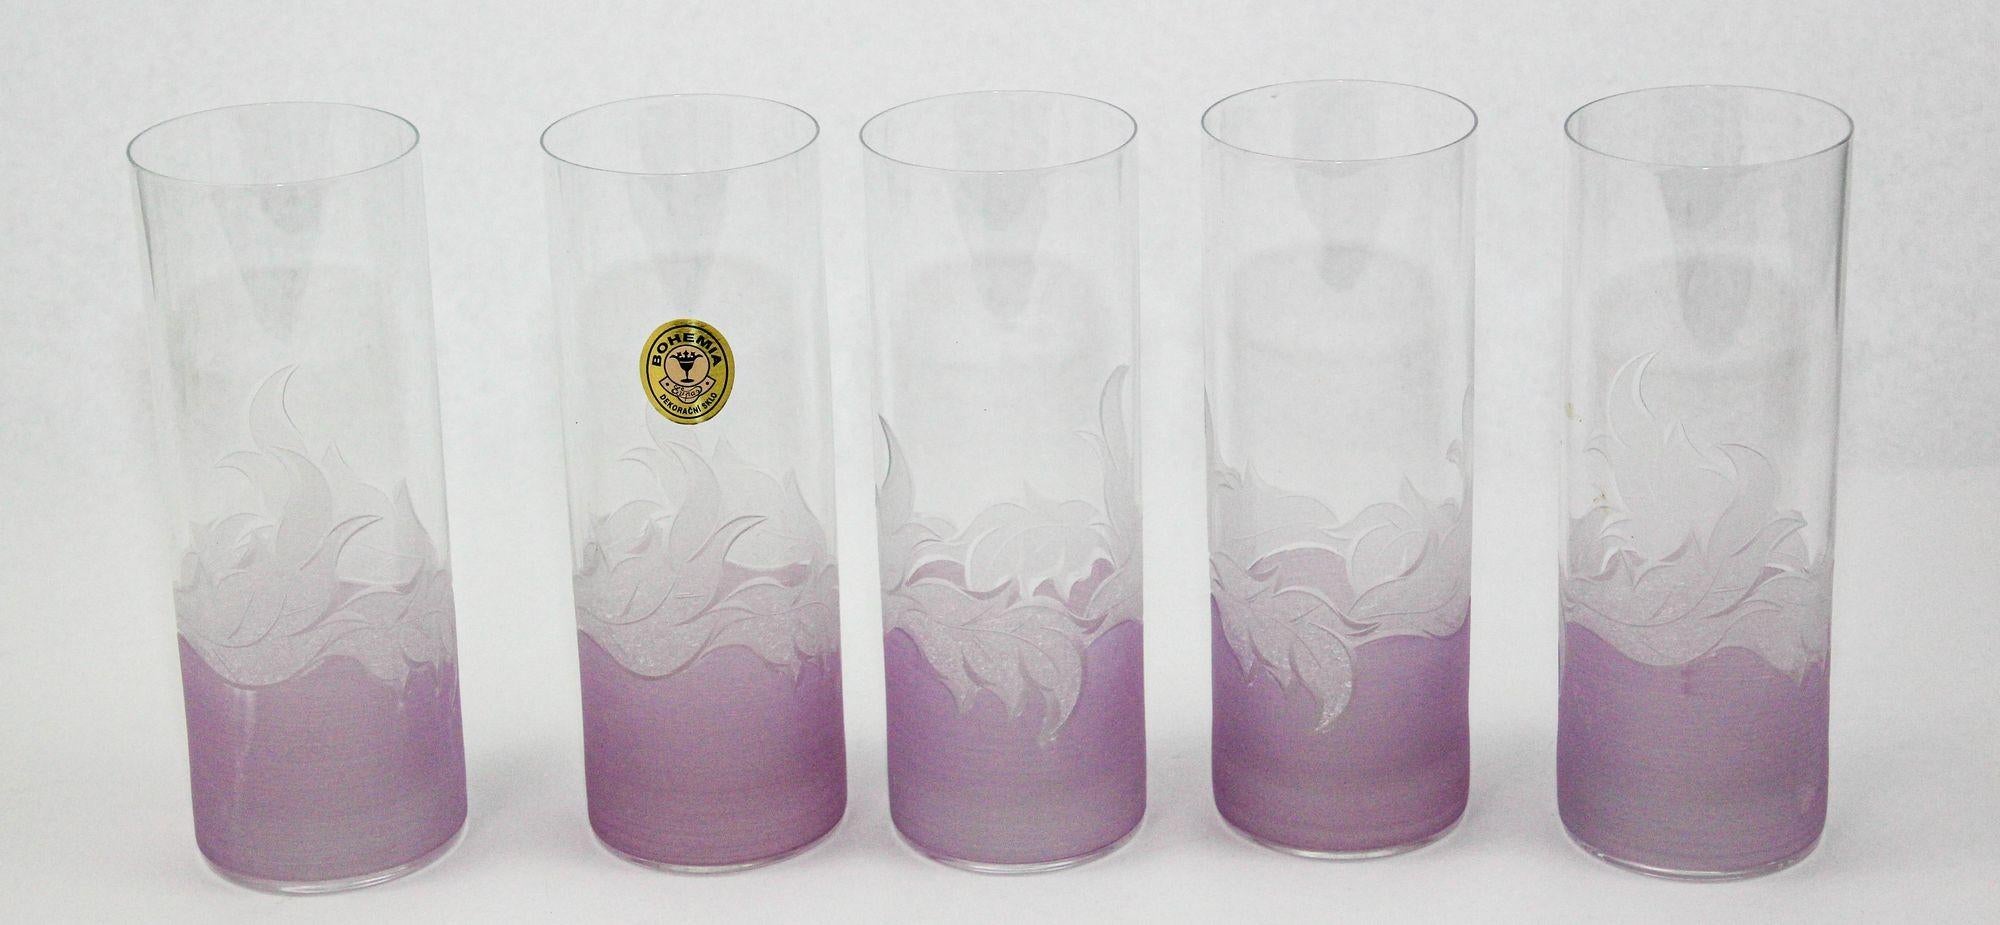 Mundgeblasenes, handgraviertes Kristallglas, sehr leichtes und zartes Set aus 5 Bechern und Highball-Gläsern.
Servieren Sie klassische und gekühlte Cocktails in diesen Bohemia Highball-Gläsern mit lavendelfarbenem, gefrostetem Laubboden.
Diese